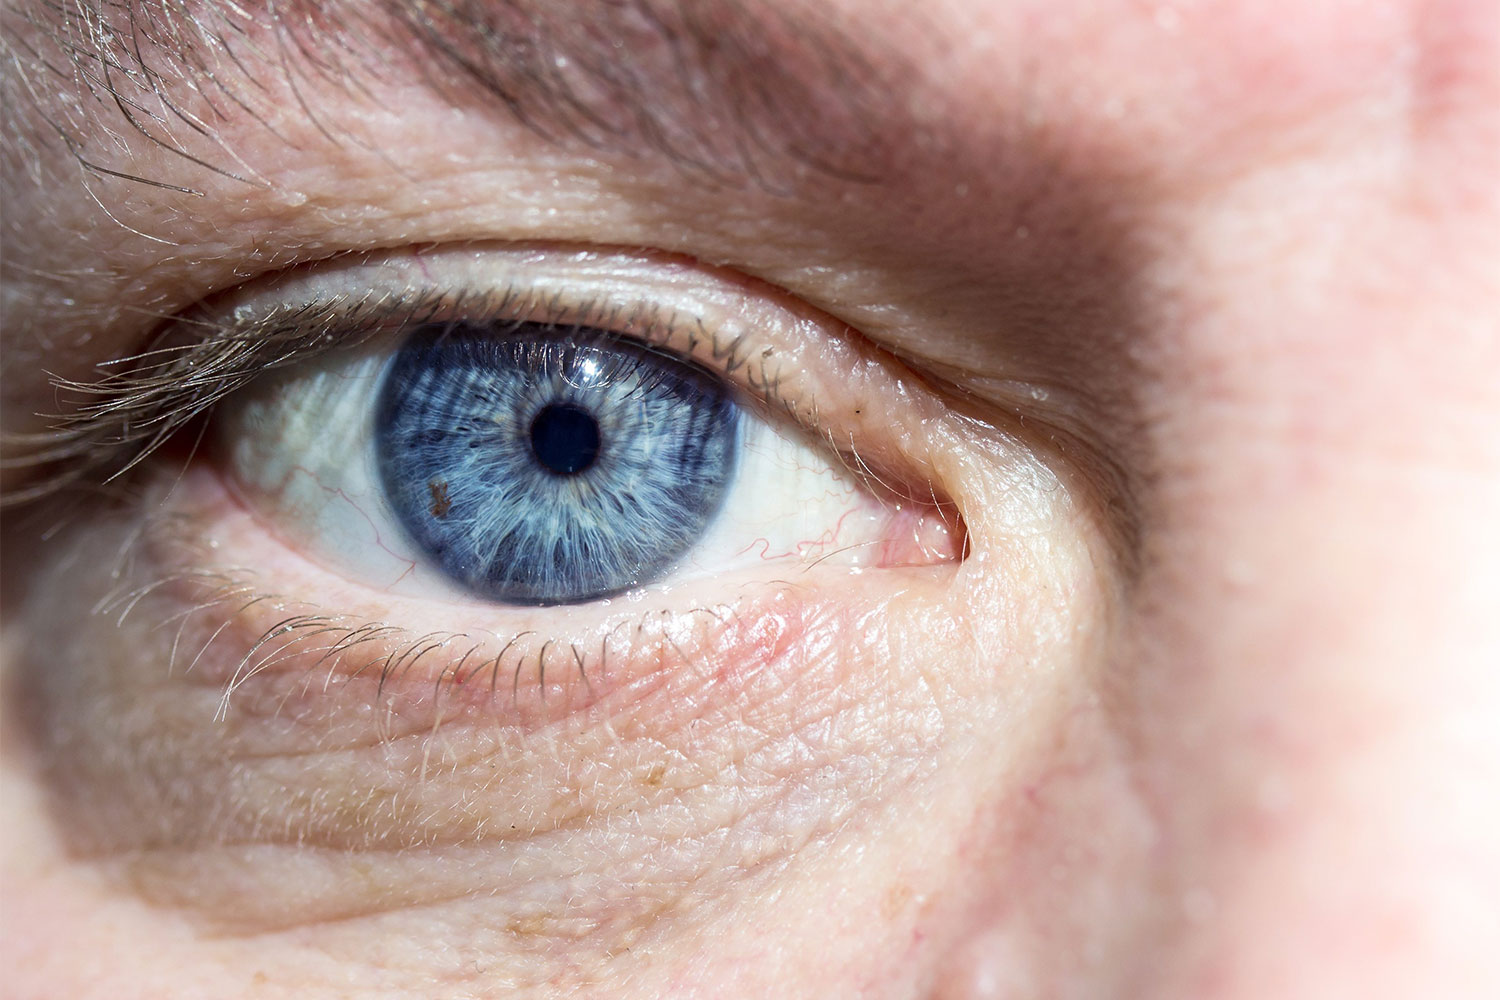 oftalmologie: sindrom de ochi uscat